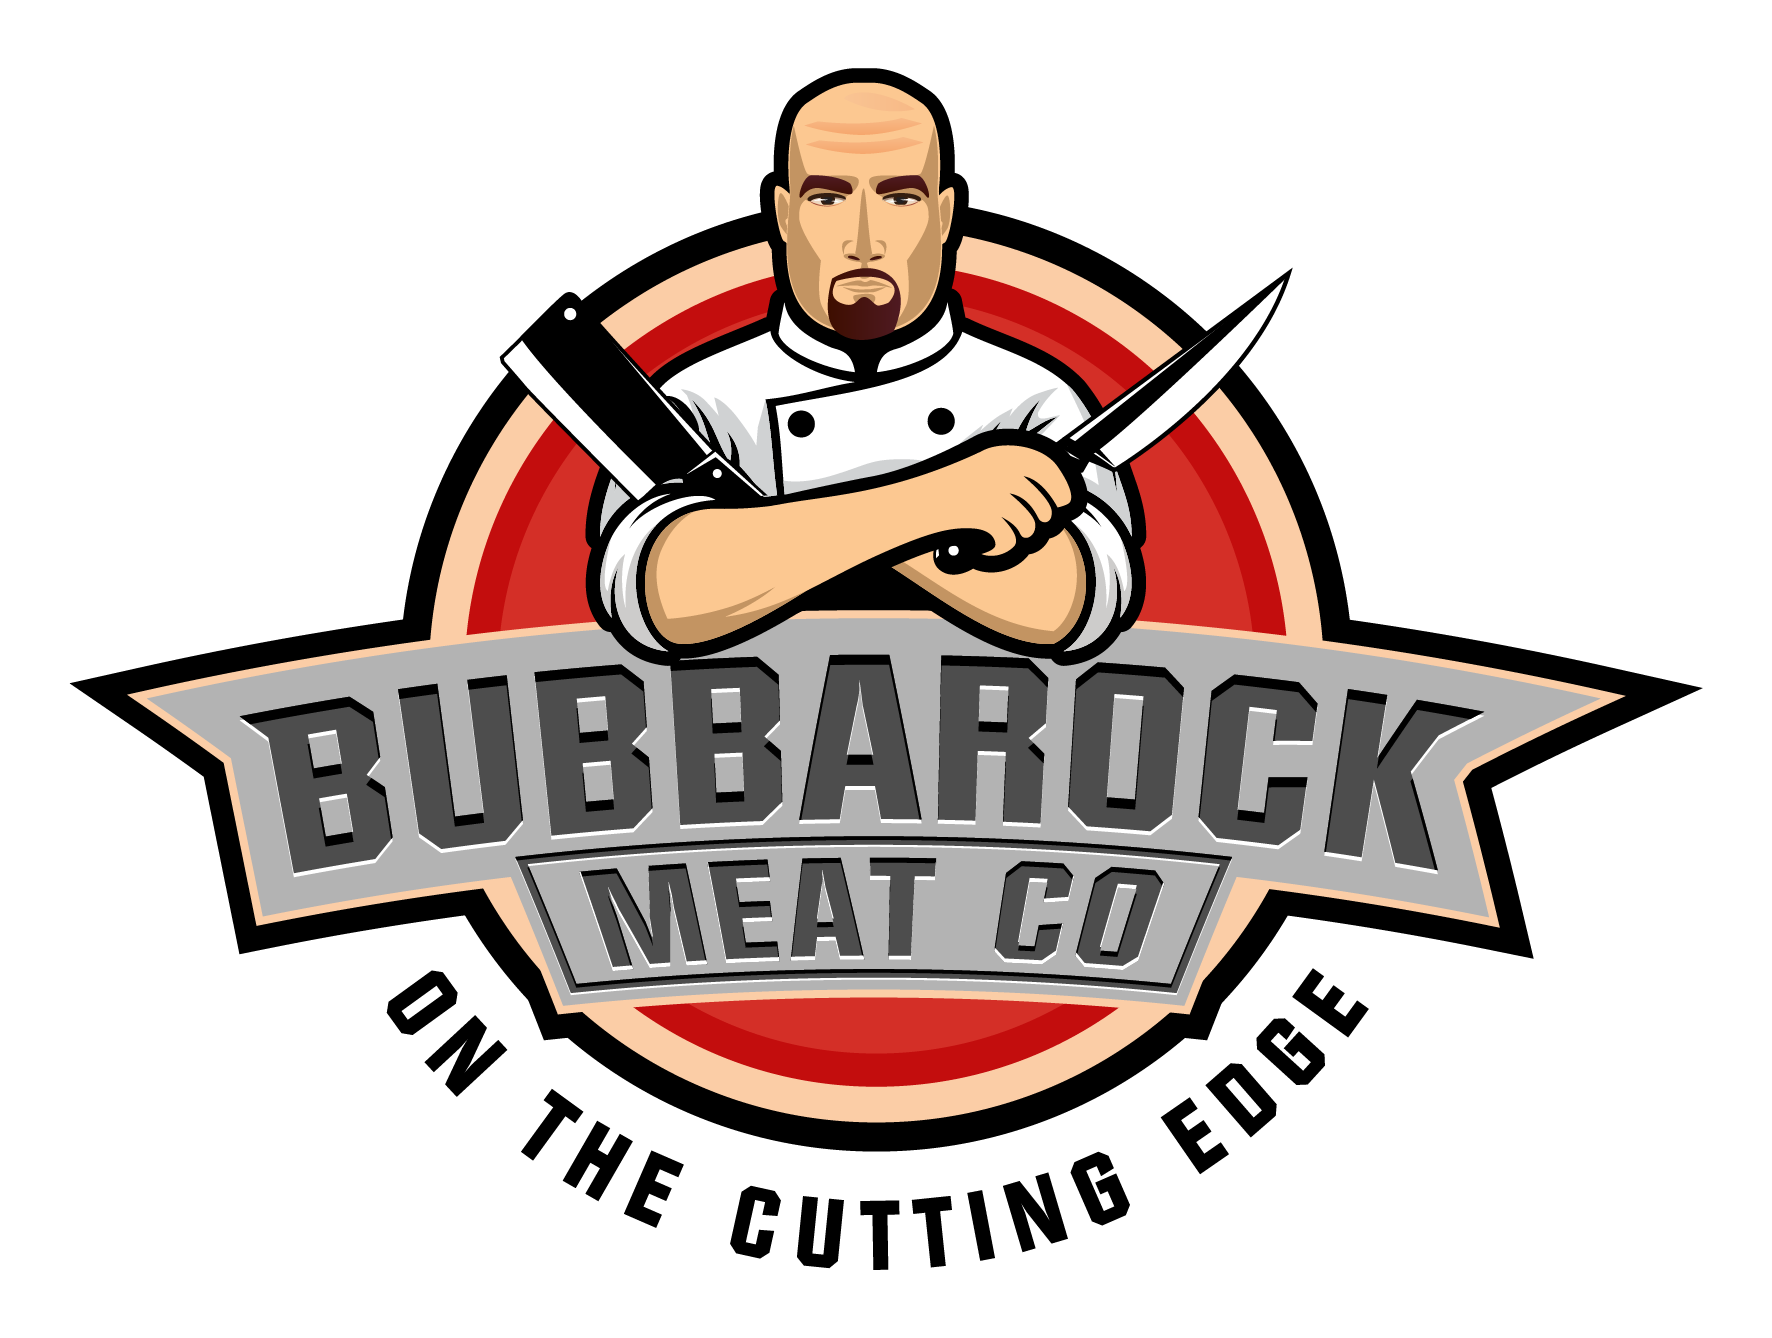 BUBBAROCK Meat Co